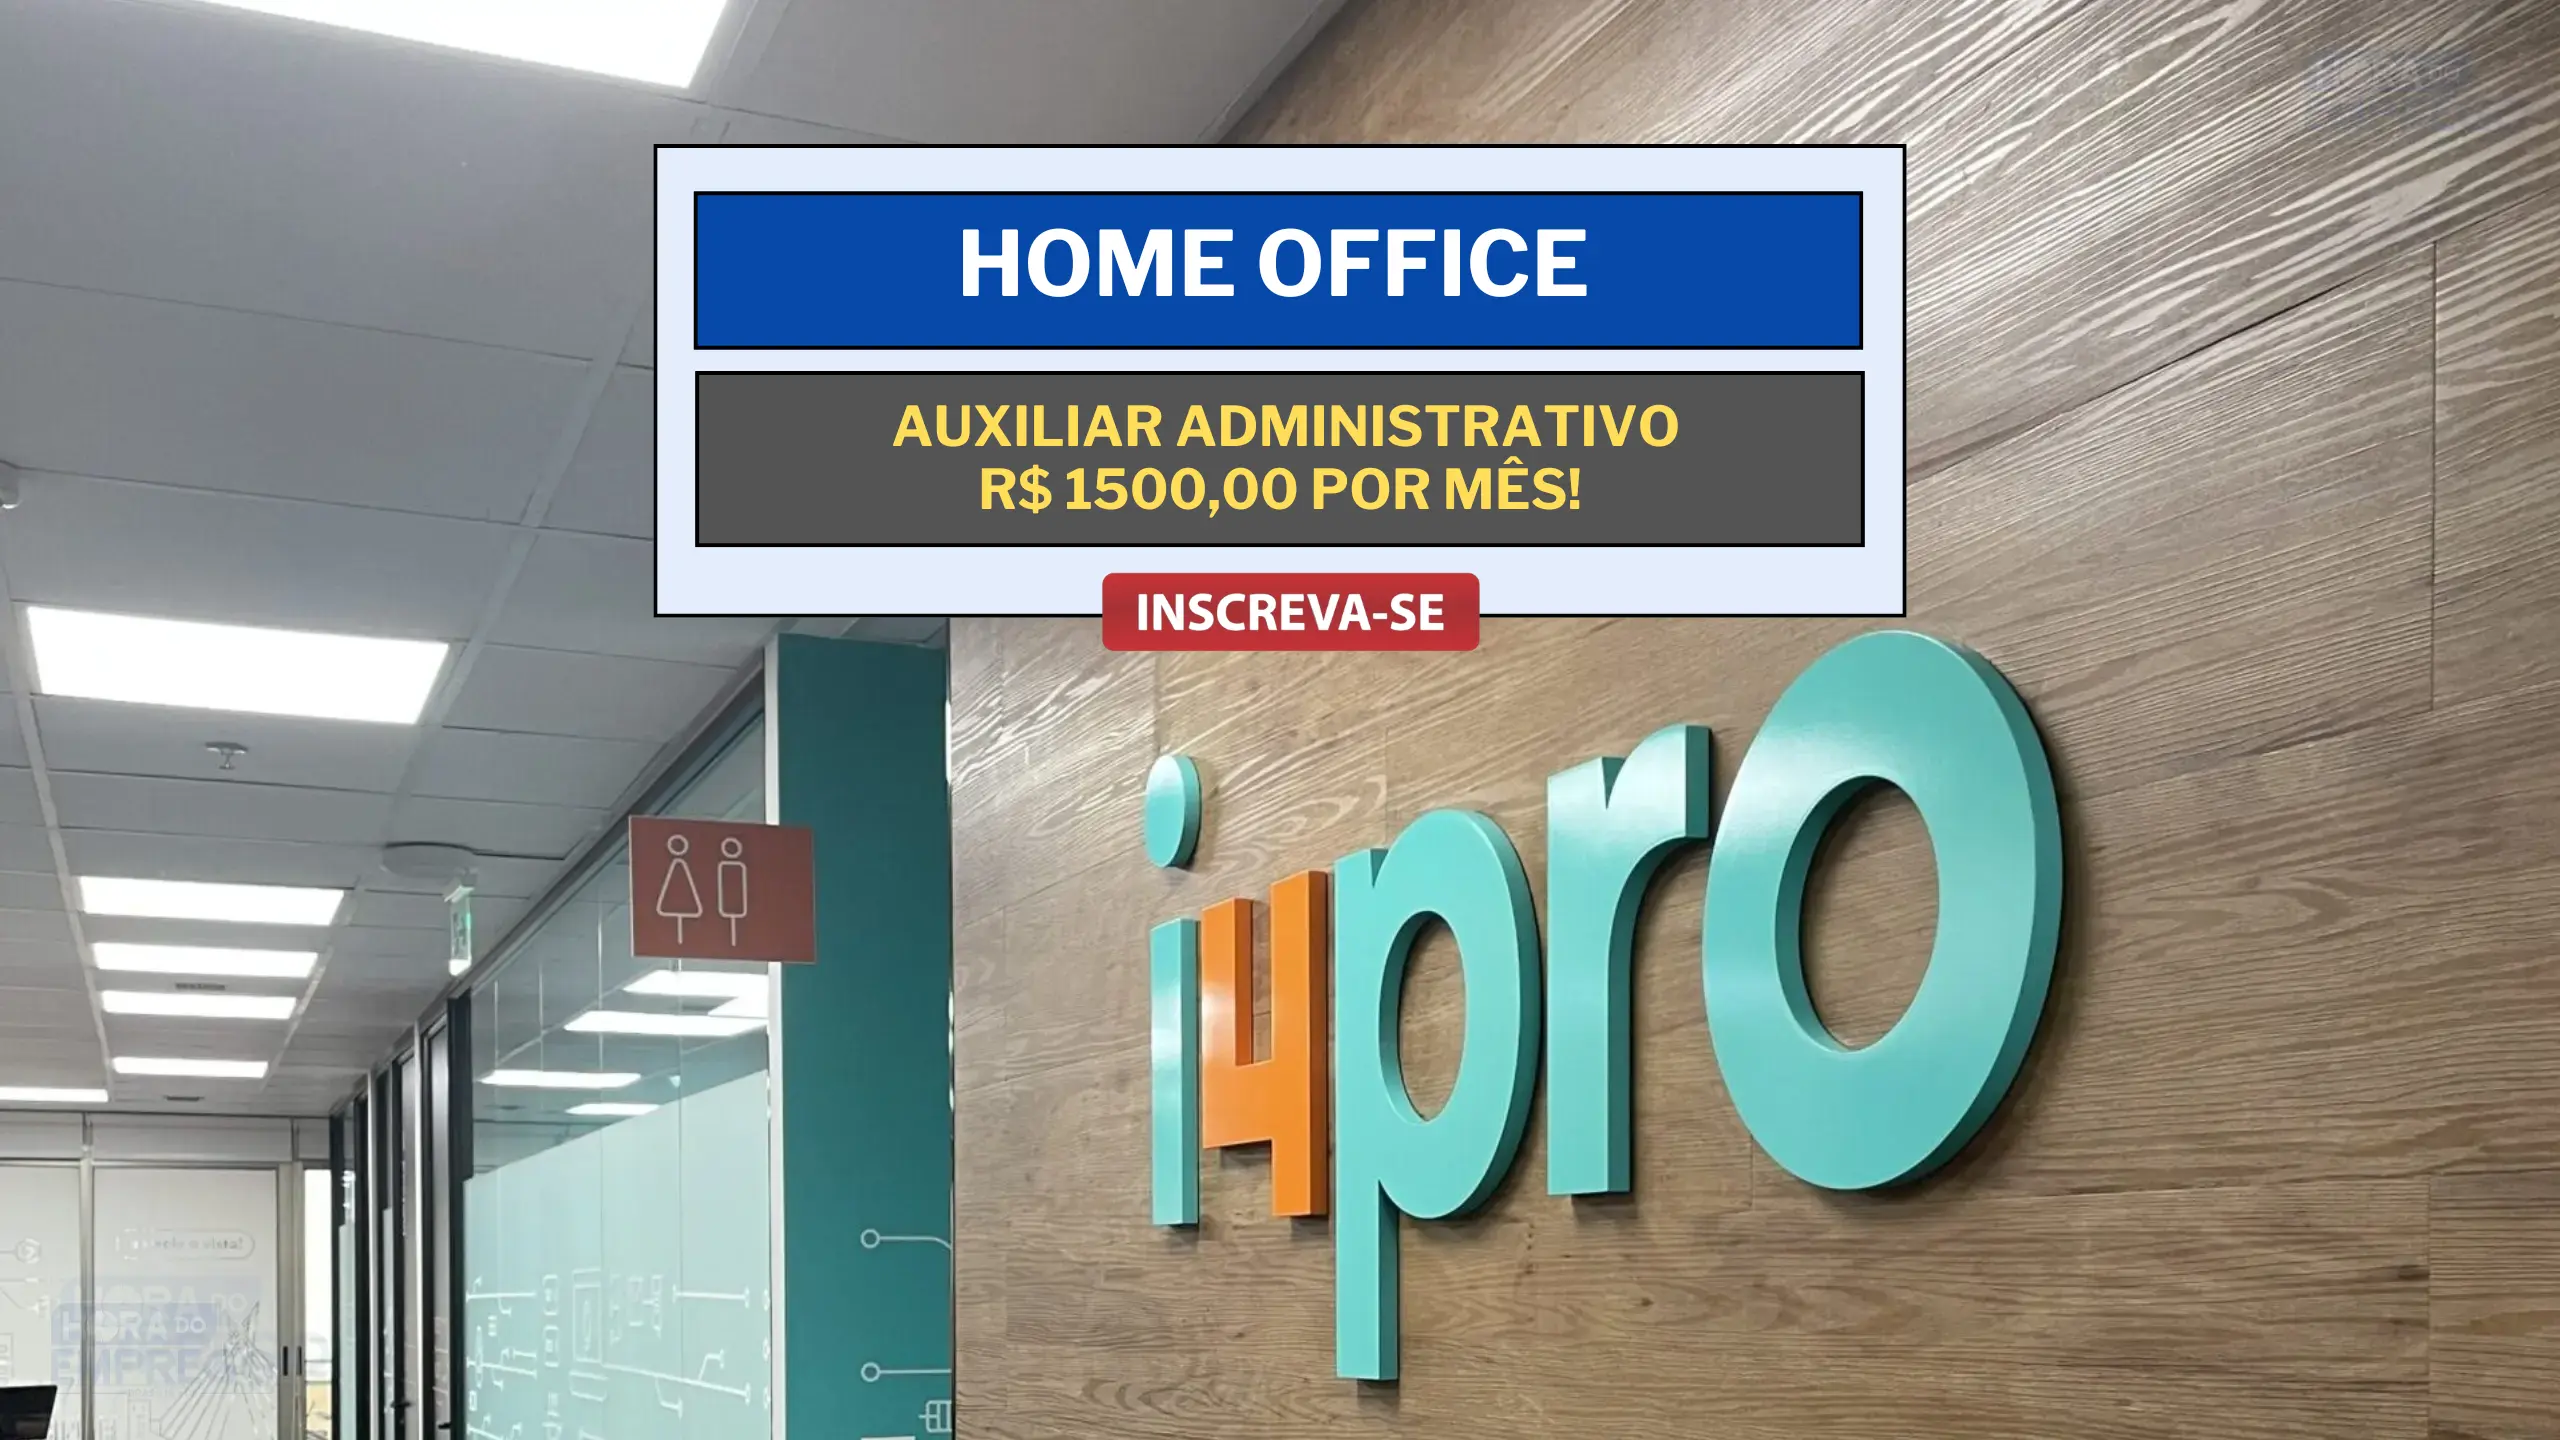 Trabalhe de Casa: Trabalhe de Casa com salário de R$ 1500,00 como Auxiliar Administrativo na i4pro